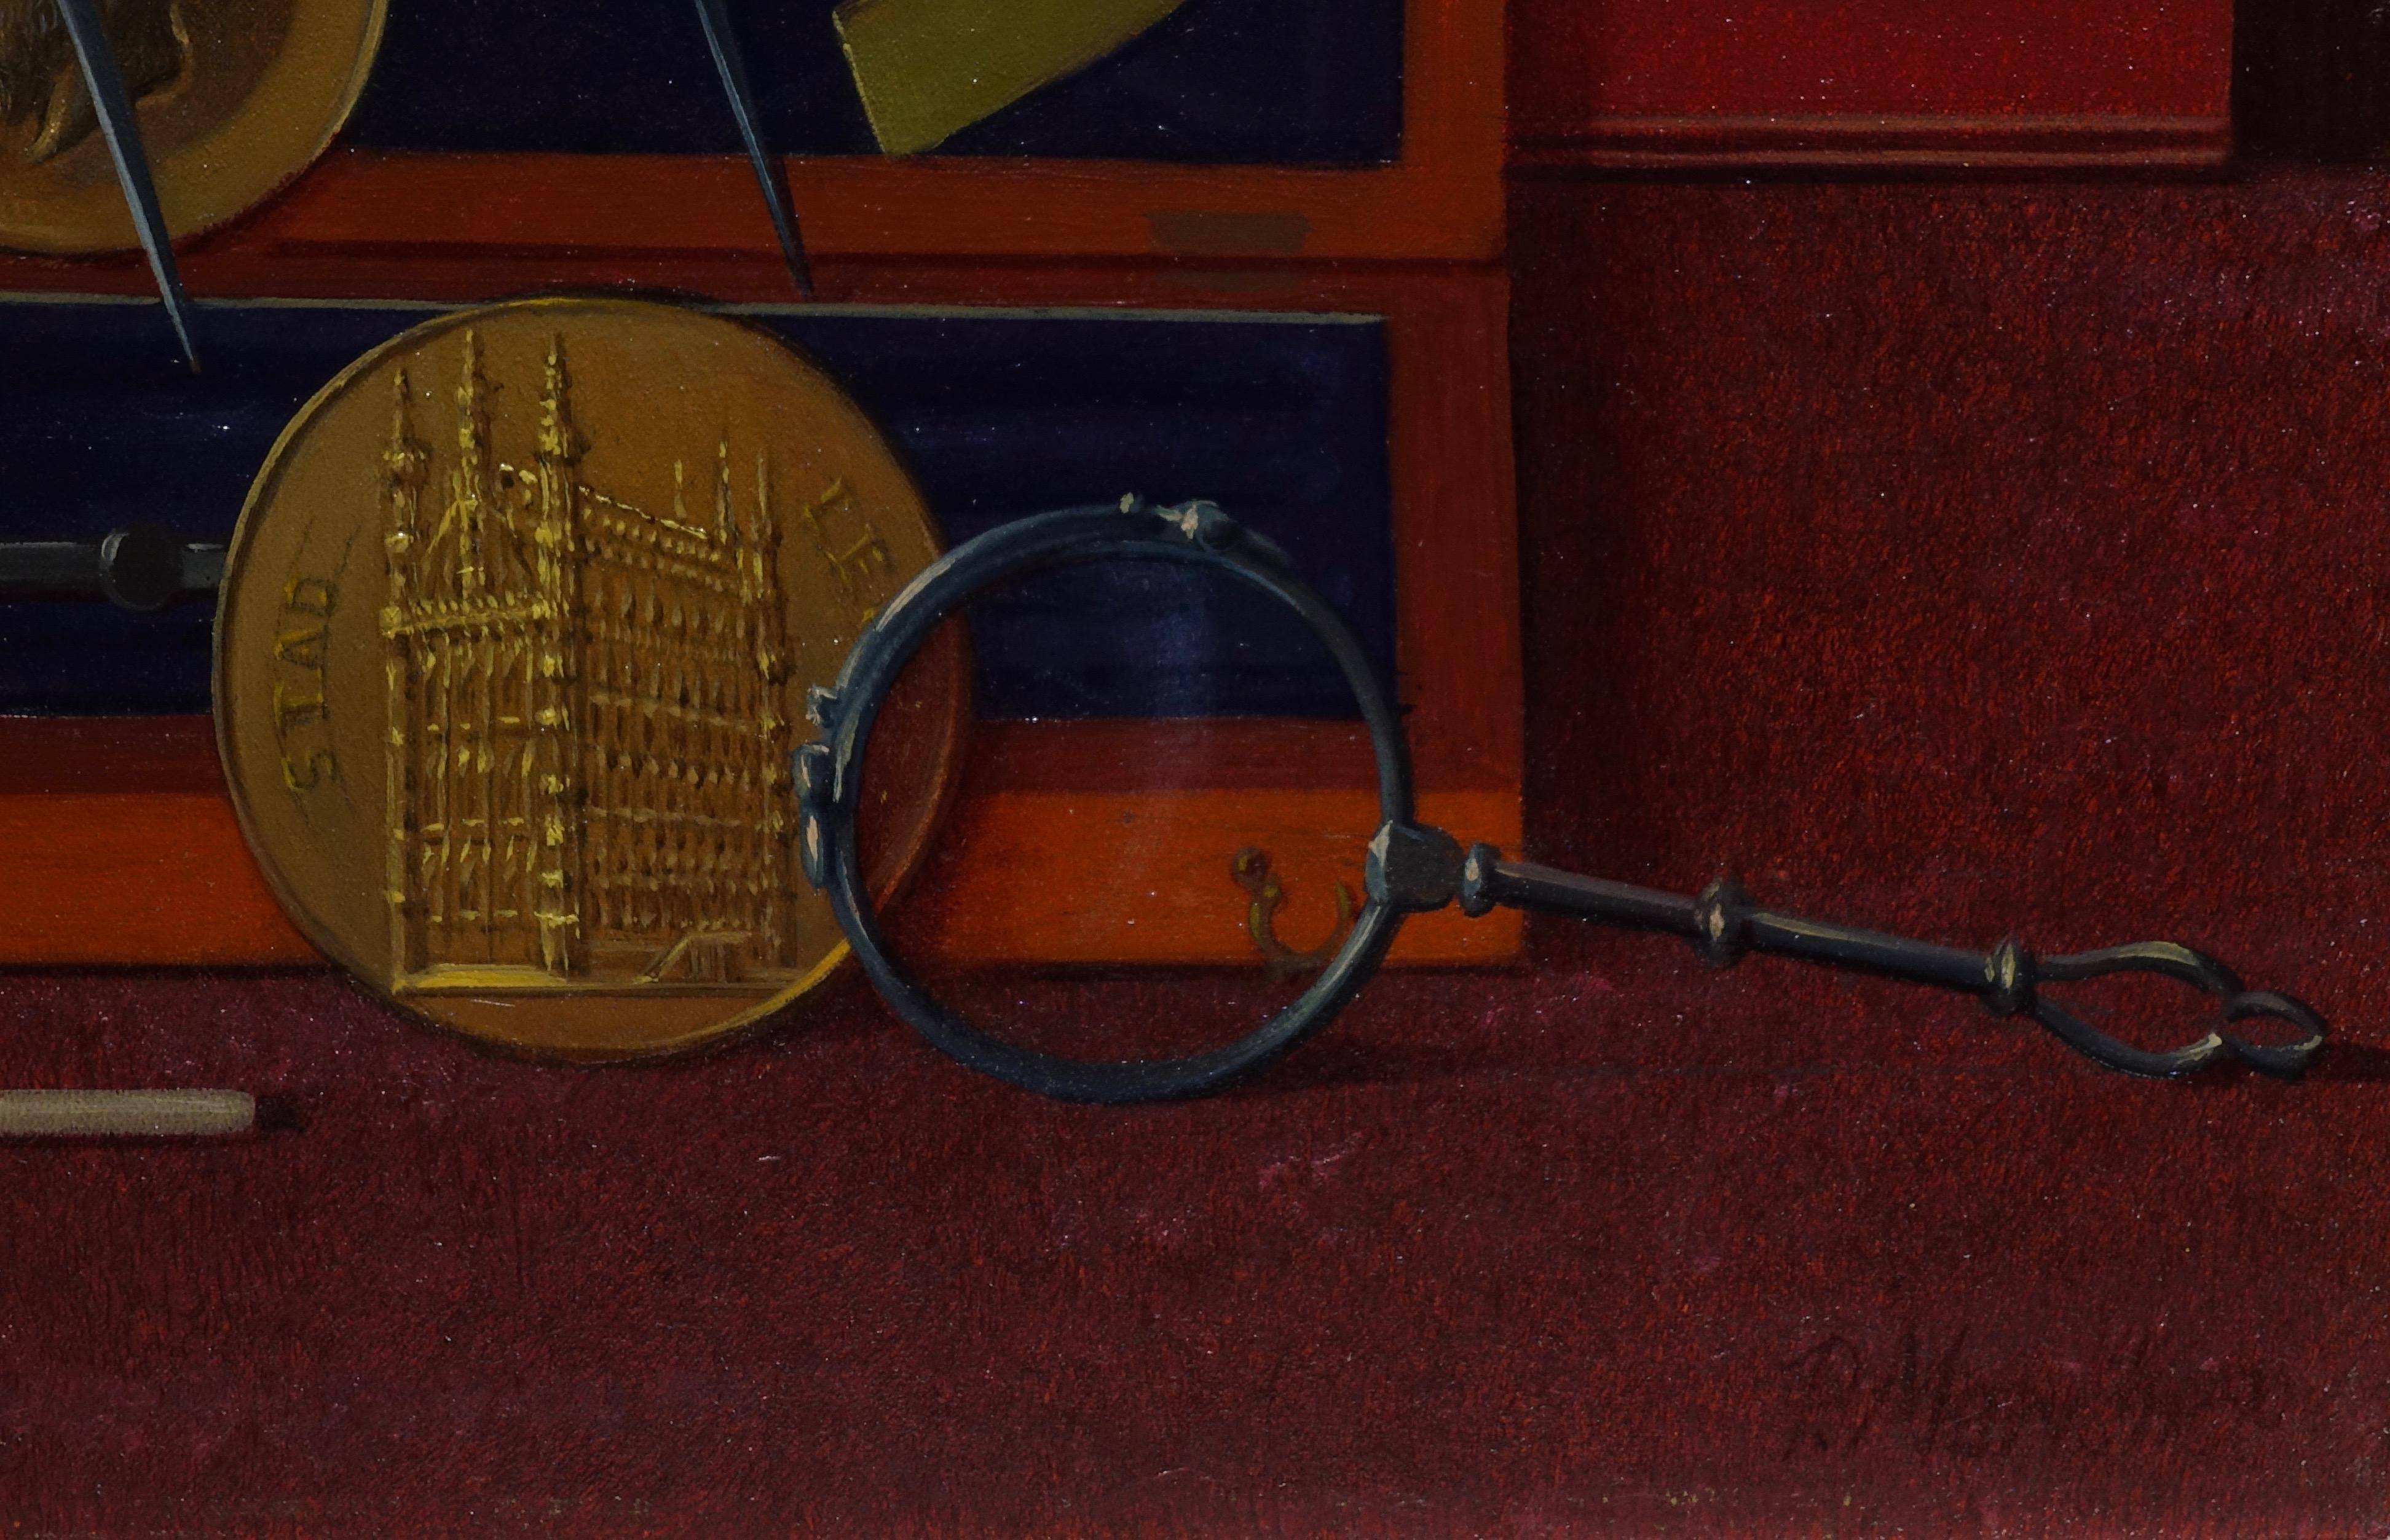 Pol Mariën (1932) 
Les attributs du graveur 
huile sur toile marouflée sur panneau
signé
30 x 40 cm

